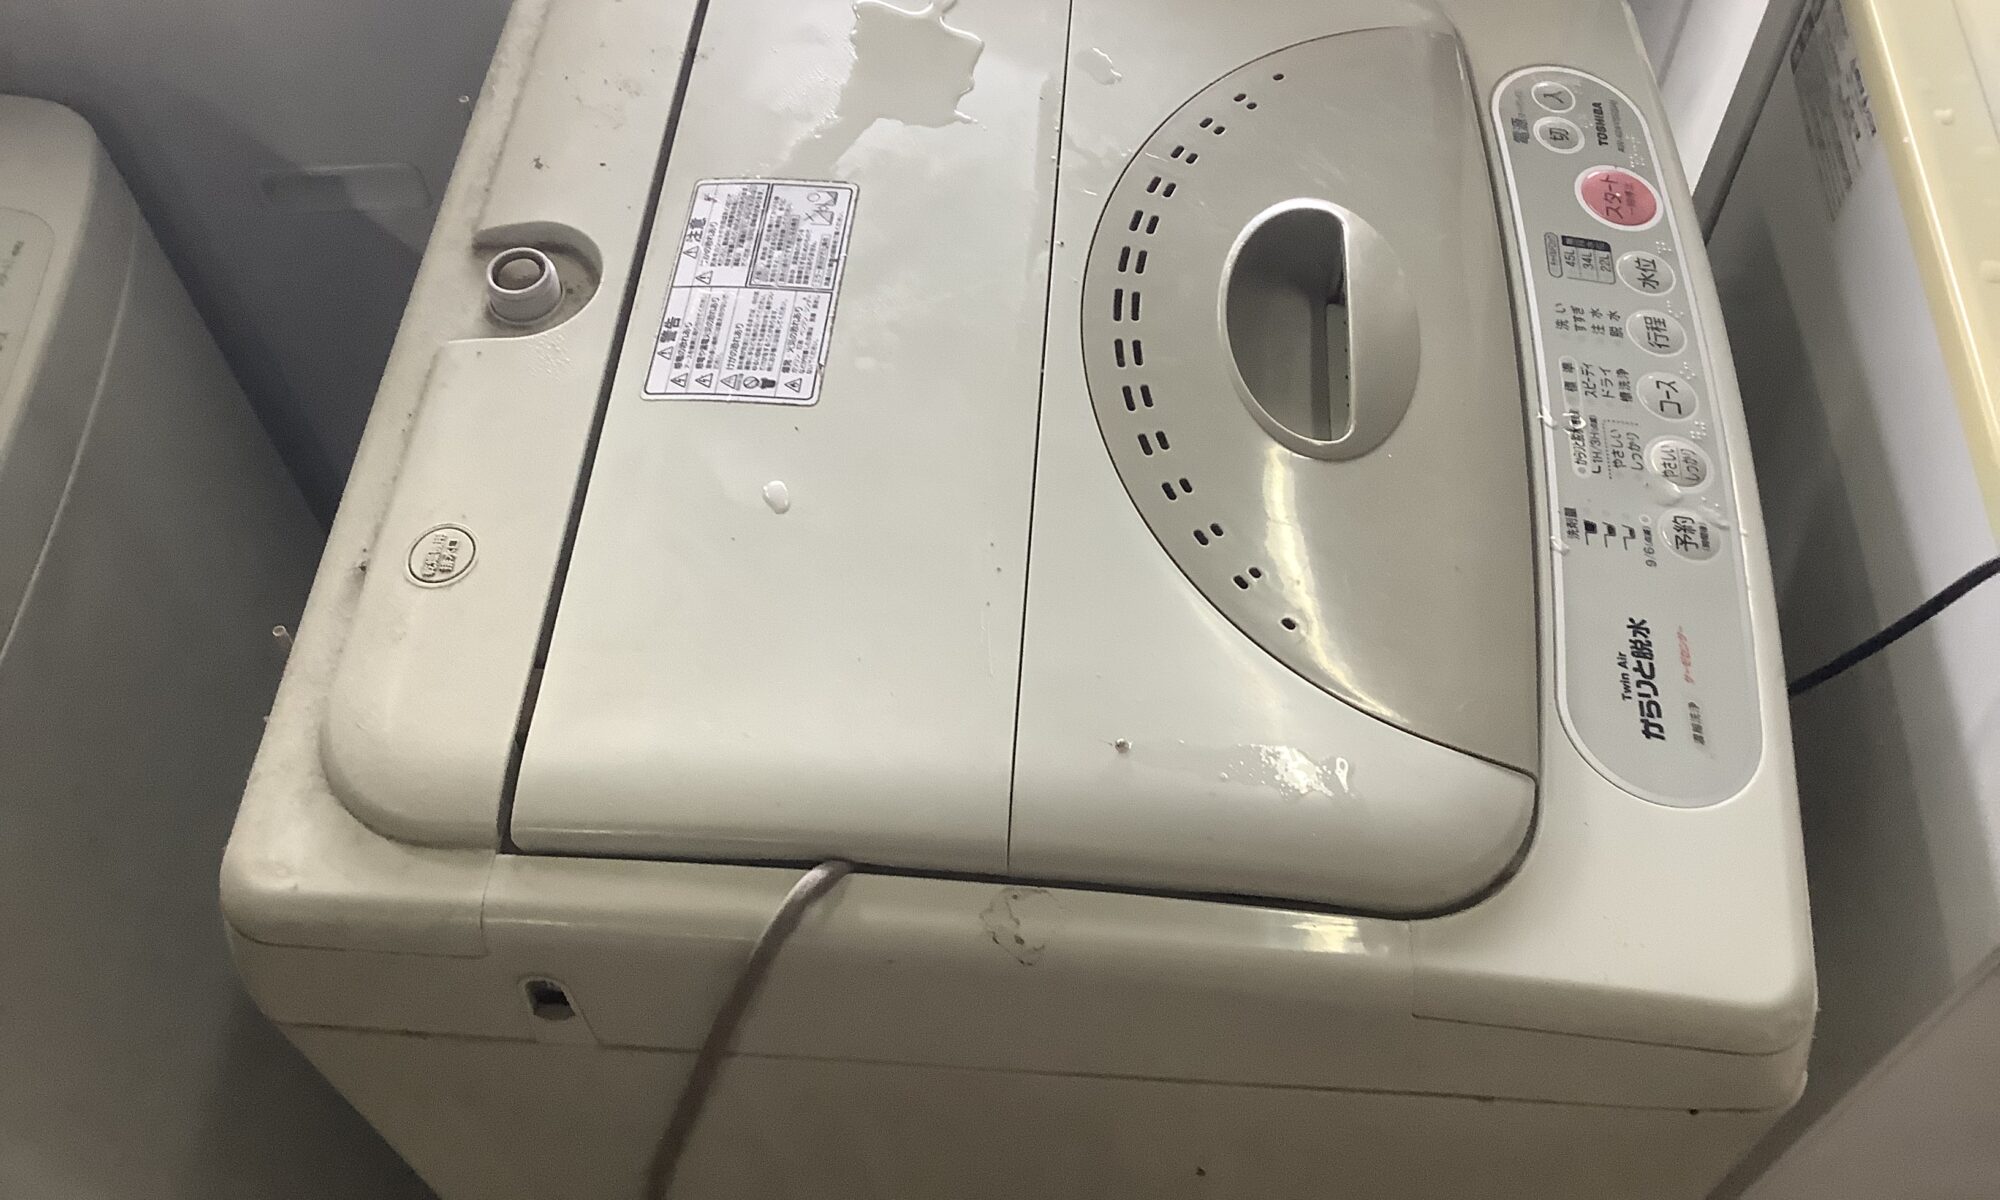 広島県府中市で回収処分した洗濯機